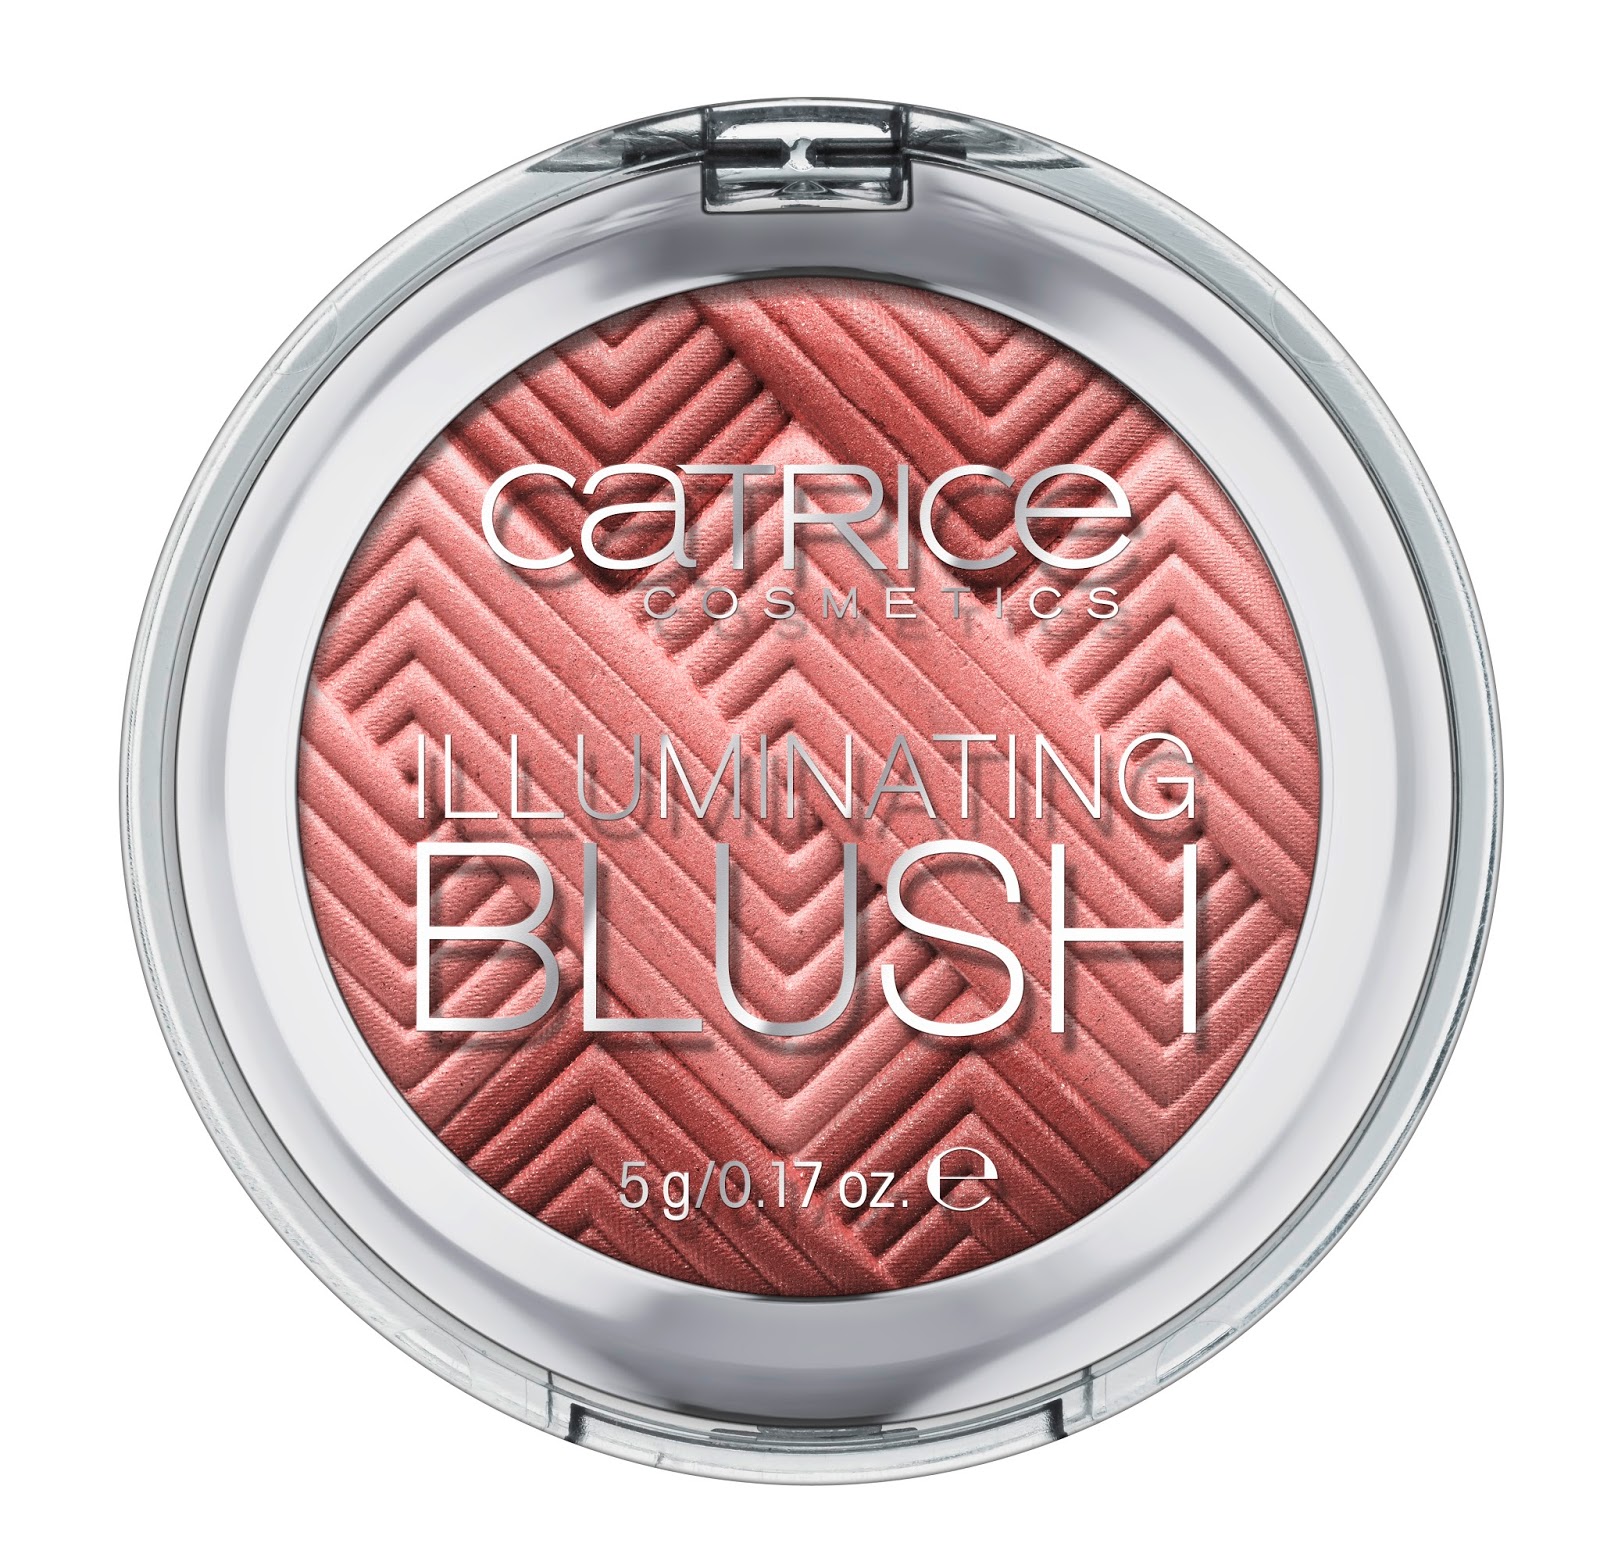 Catrice - Illuminating Blush